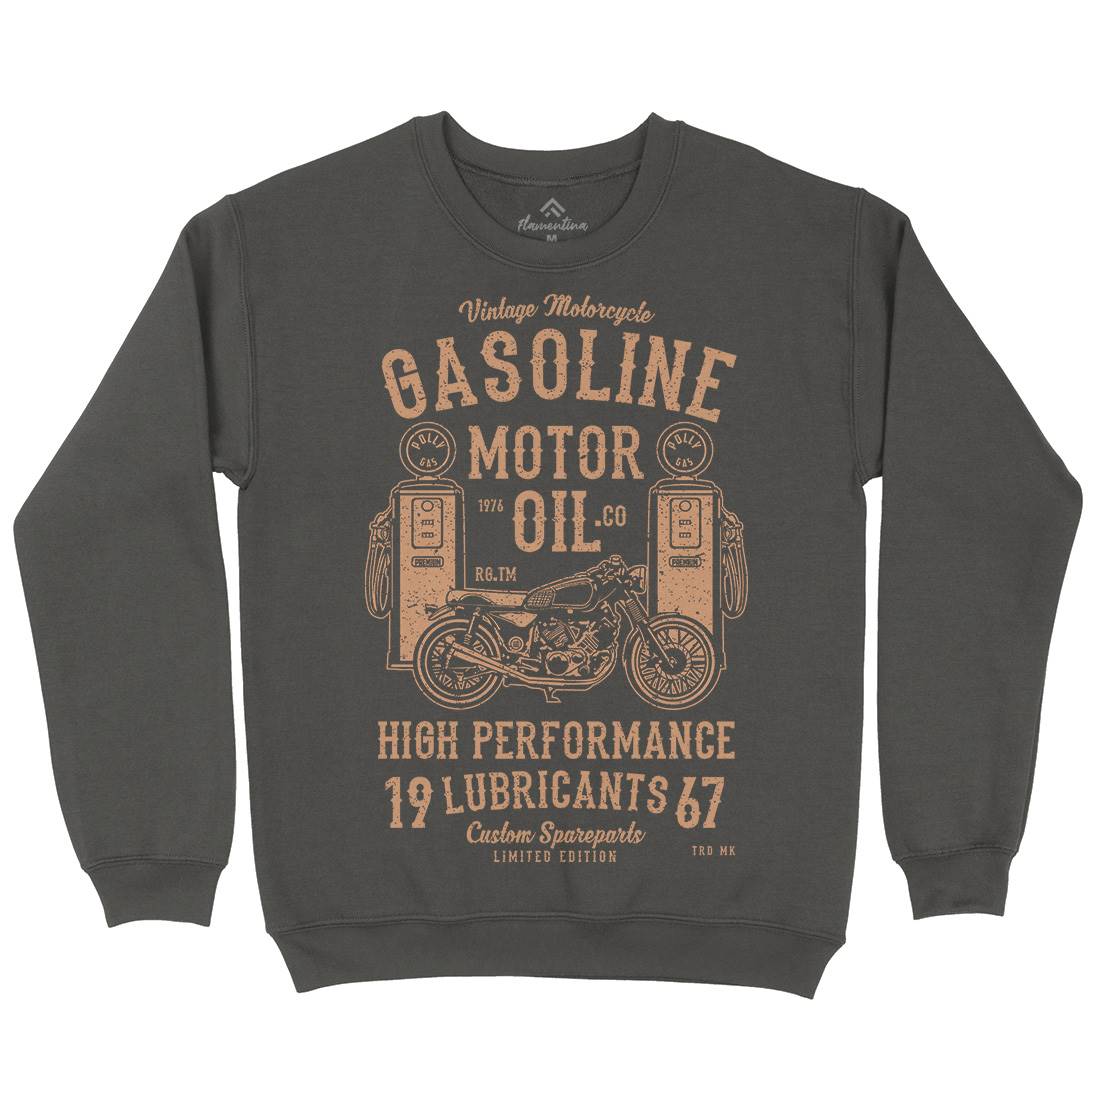 Gasoline Motor Oil Kids Crew Neck Sweatshirt Motorcycles A669